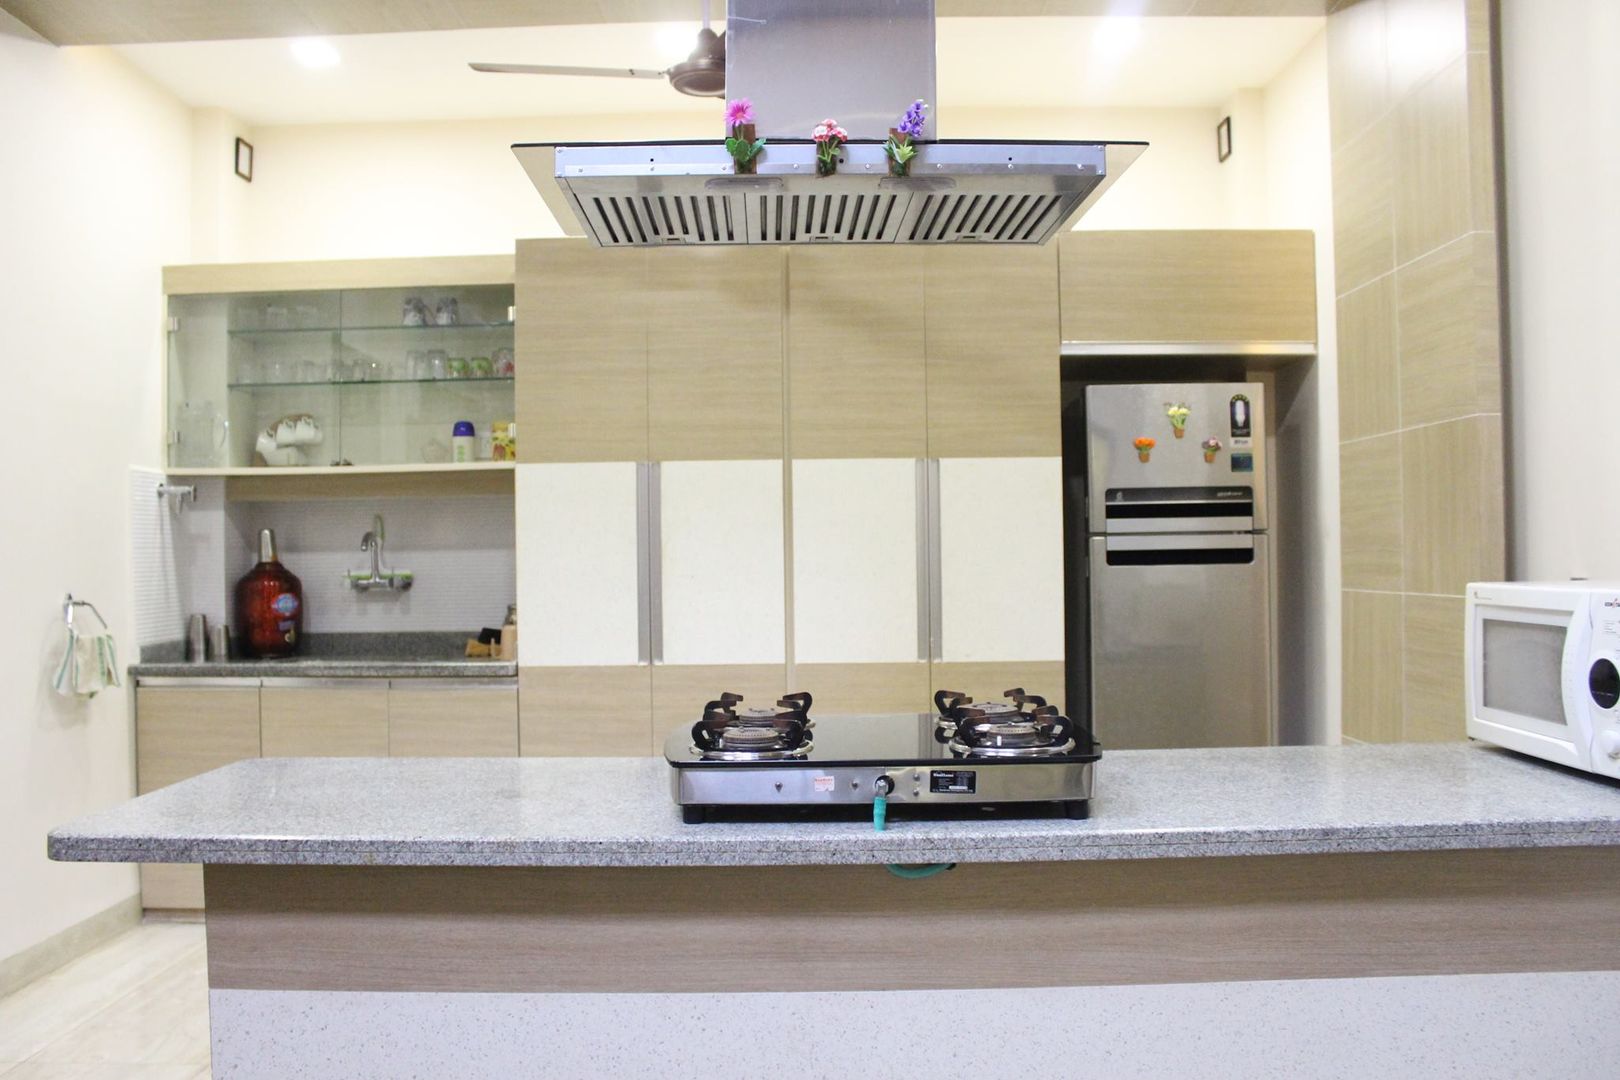 Duplex in Indore, Shadab Anwari & Associates. Shadab Anwari & Associates. Asian style kitchen